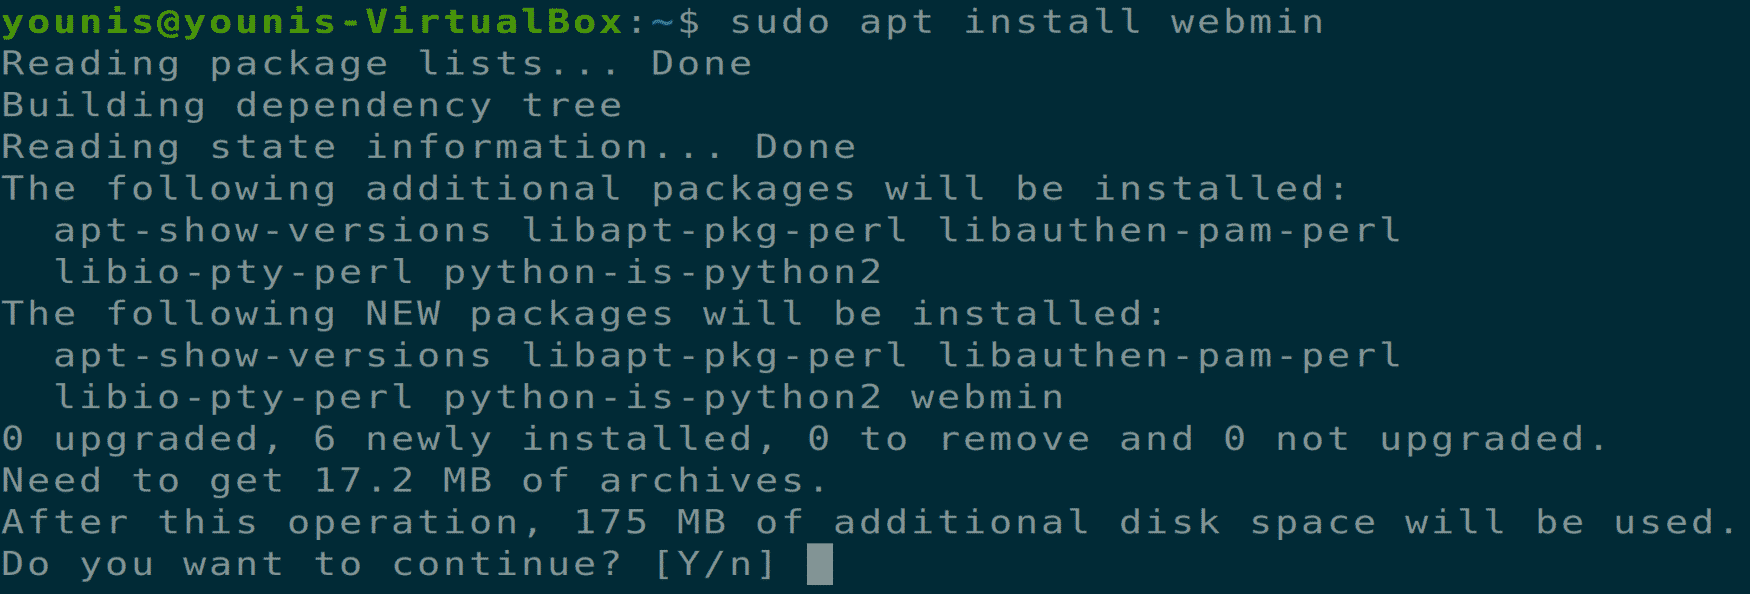 notepad++ ubuntu install without snap